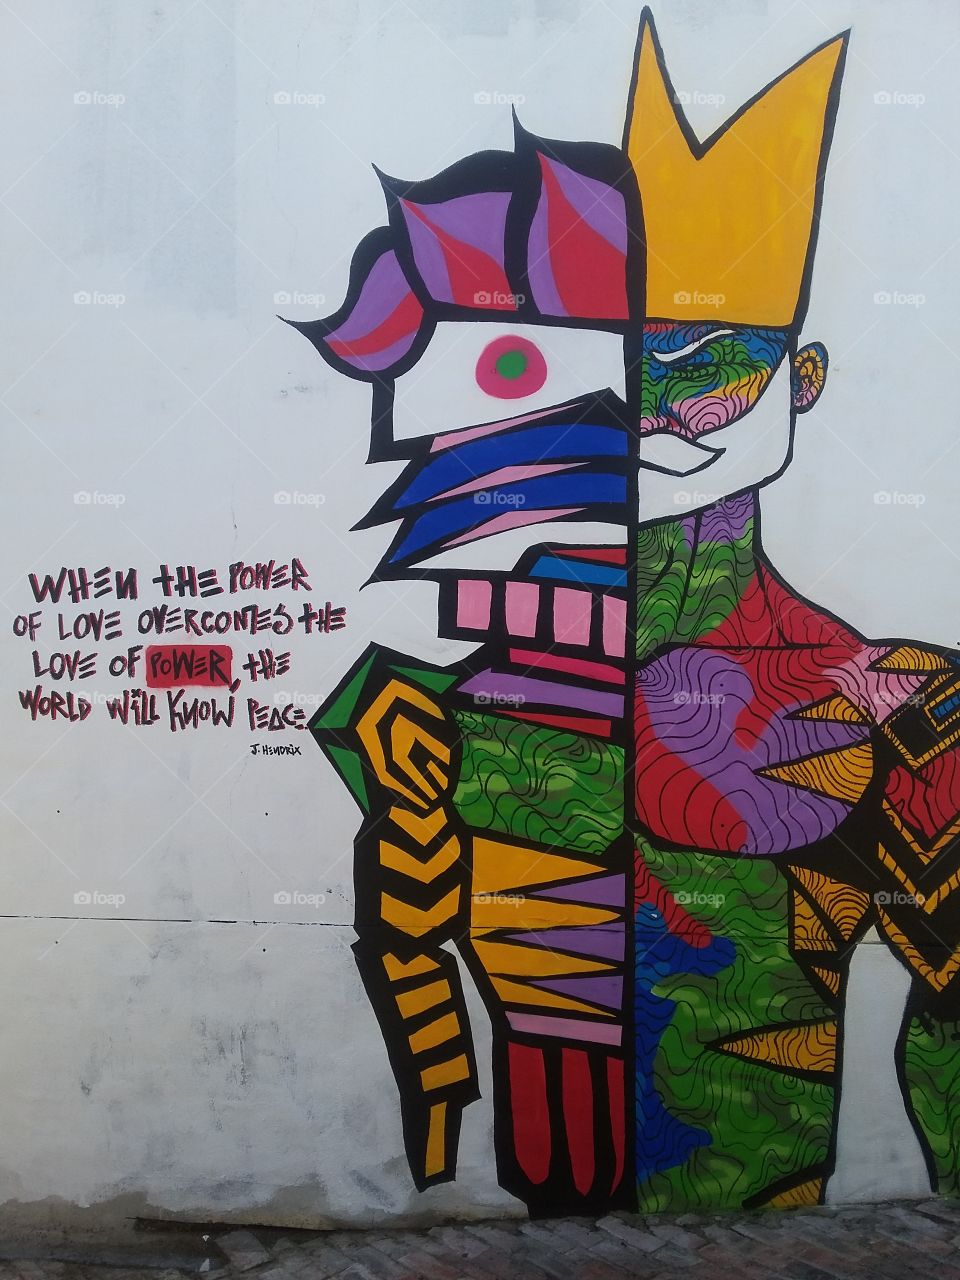 Graffiti with Jimi Hendrix quote